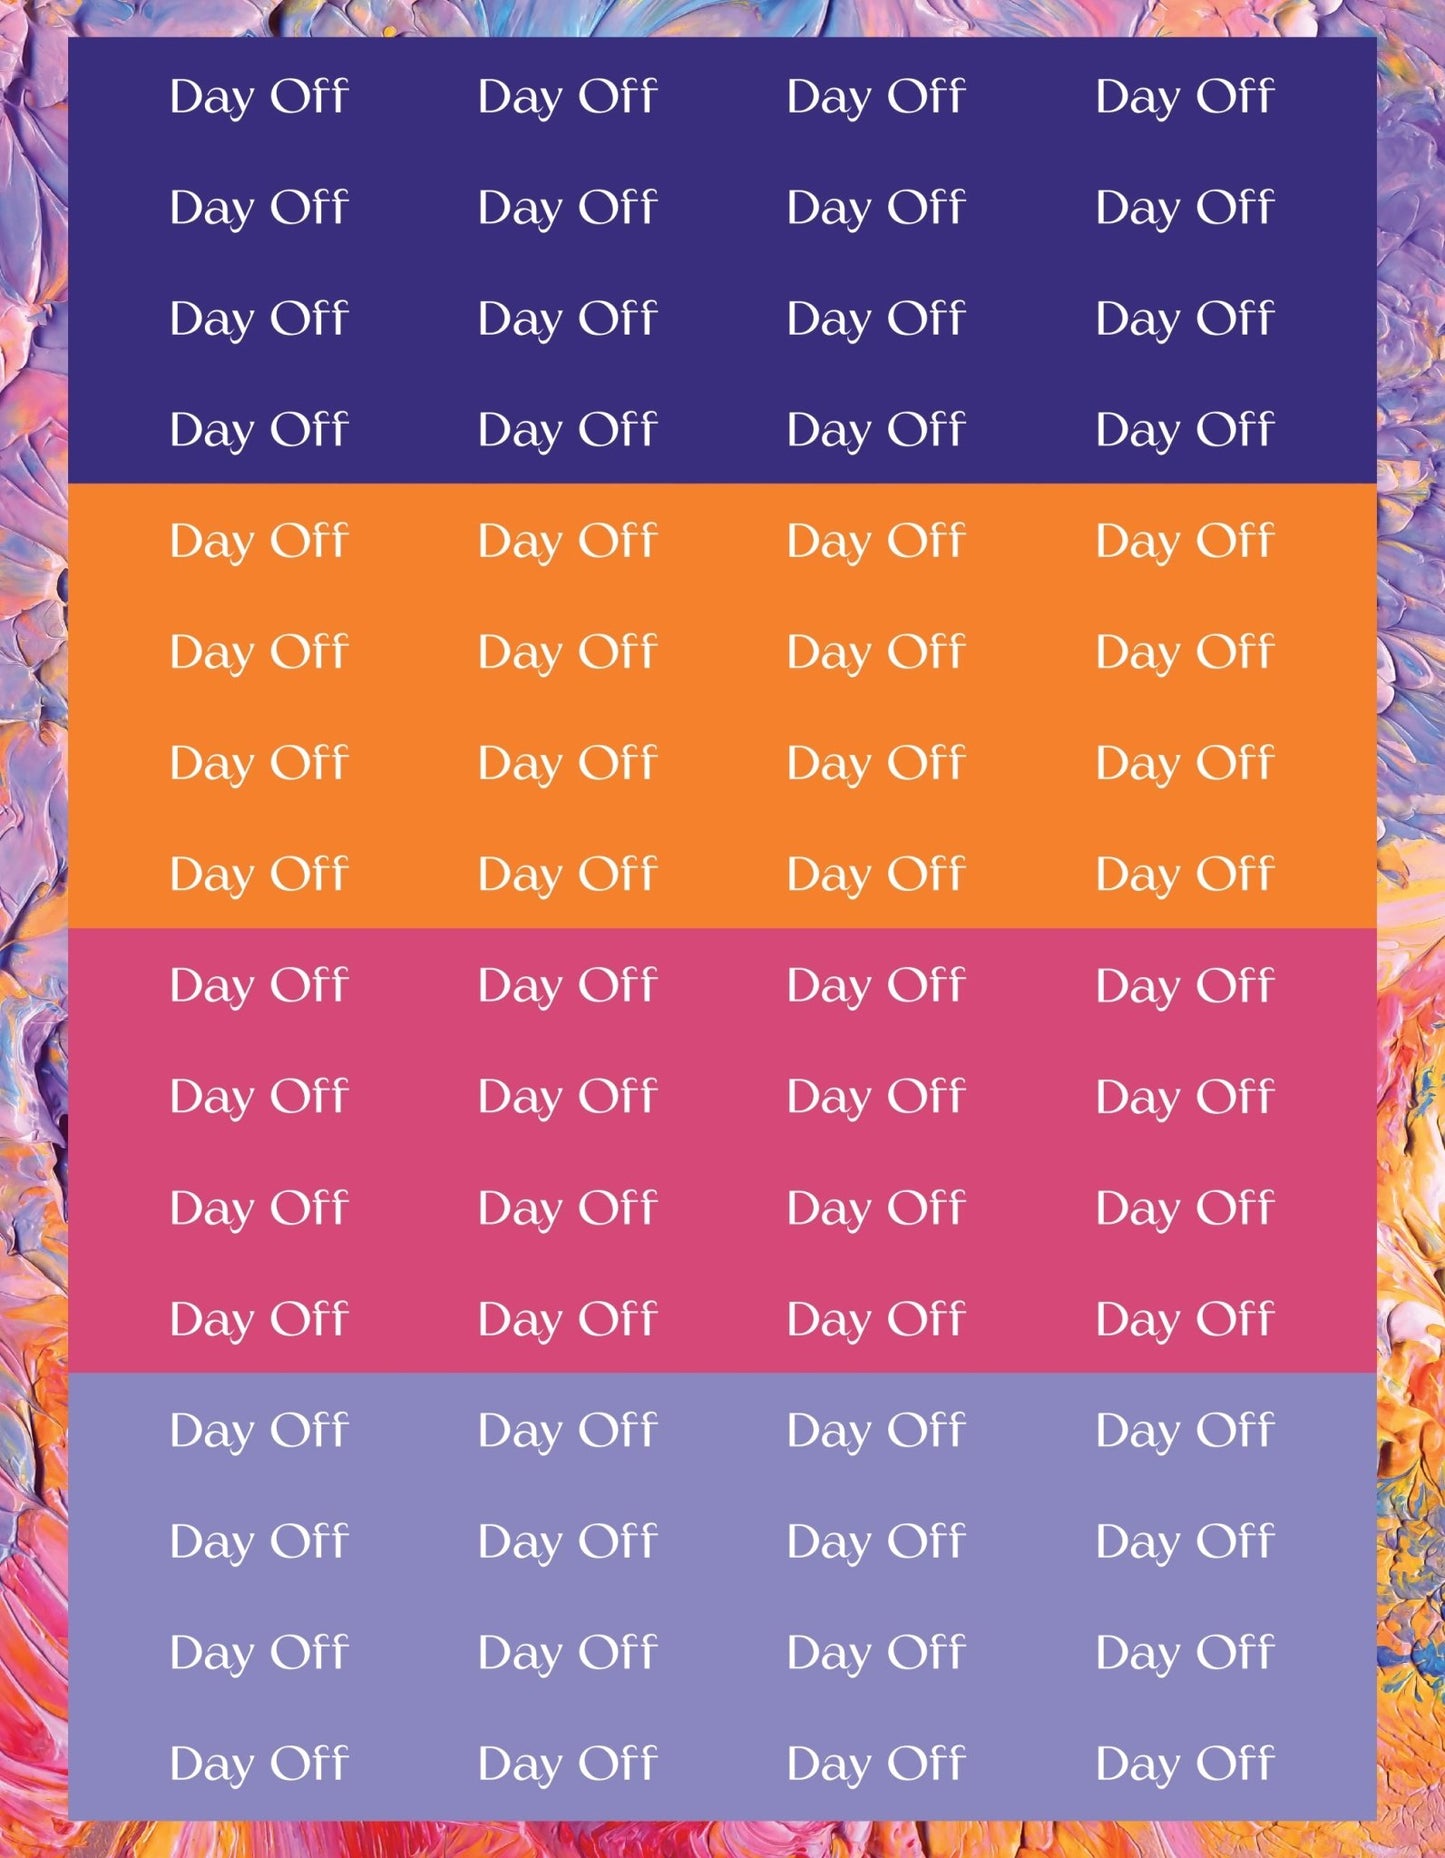 Day Off Sticker Sheets - 9 Designs/Colors - Colibri Paper Co